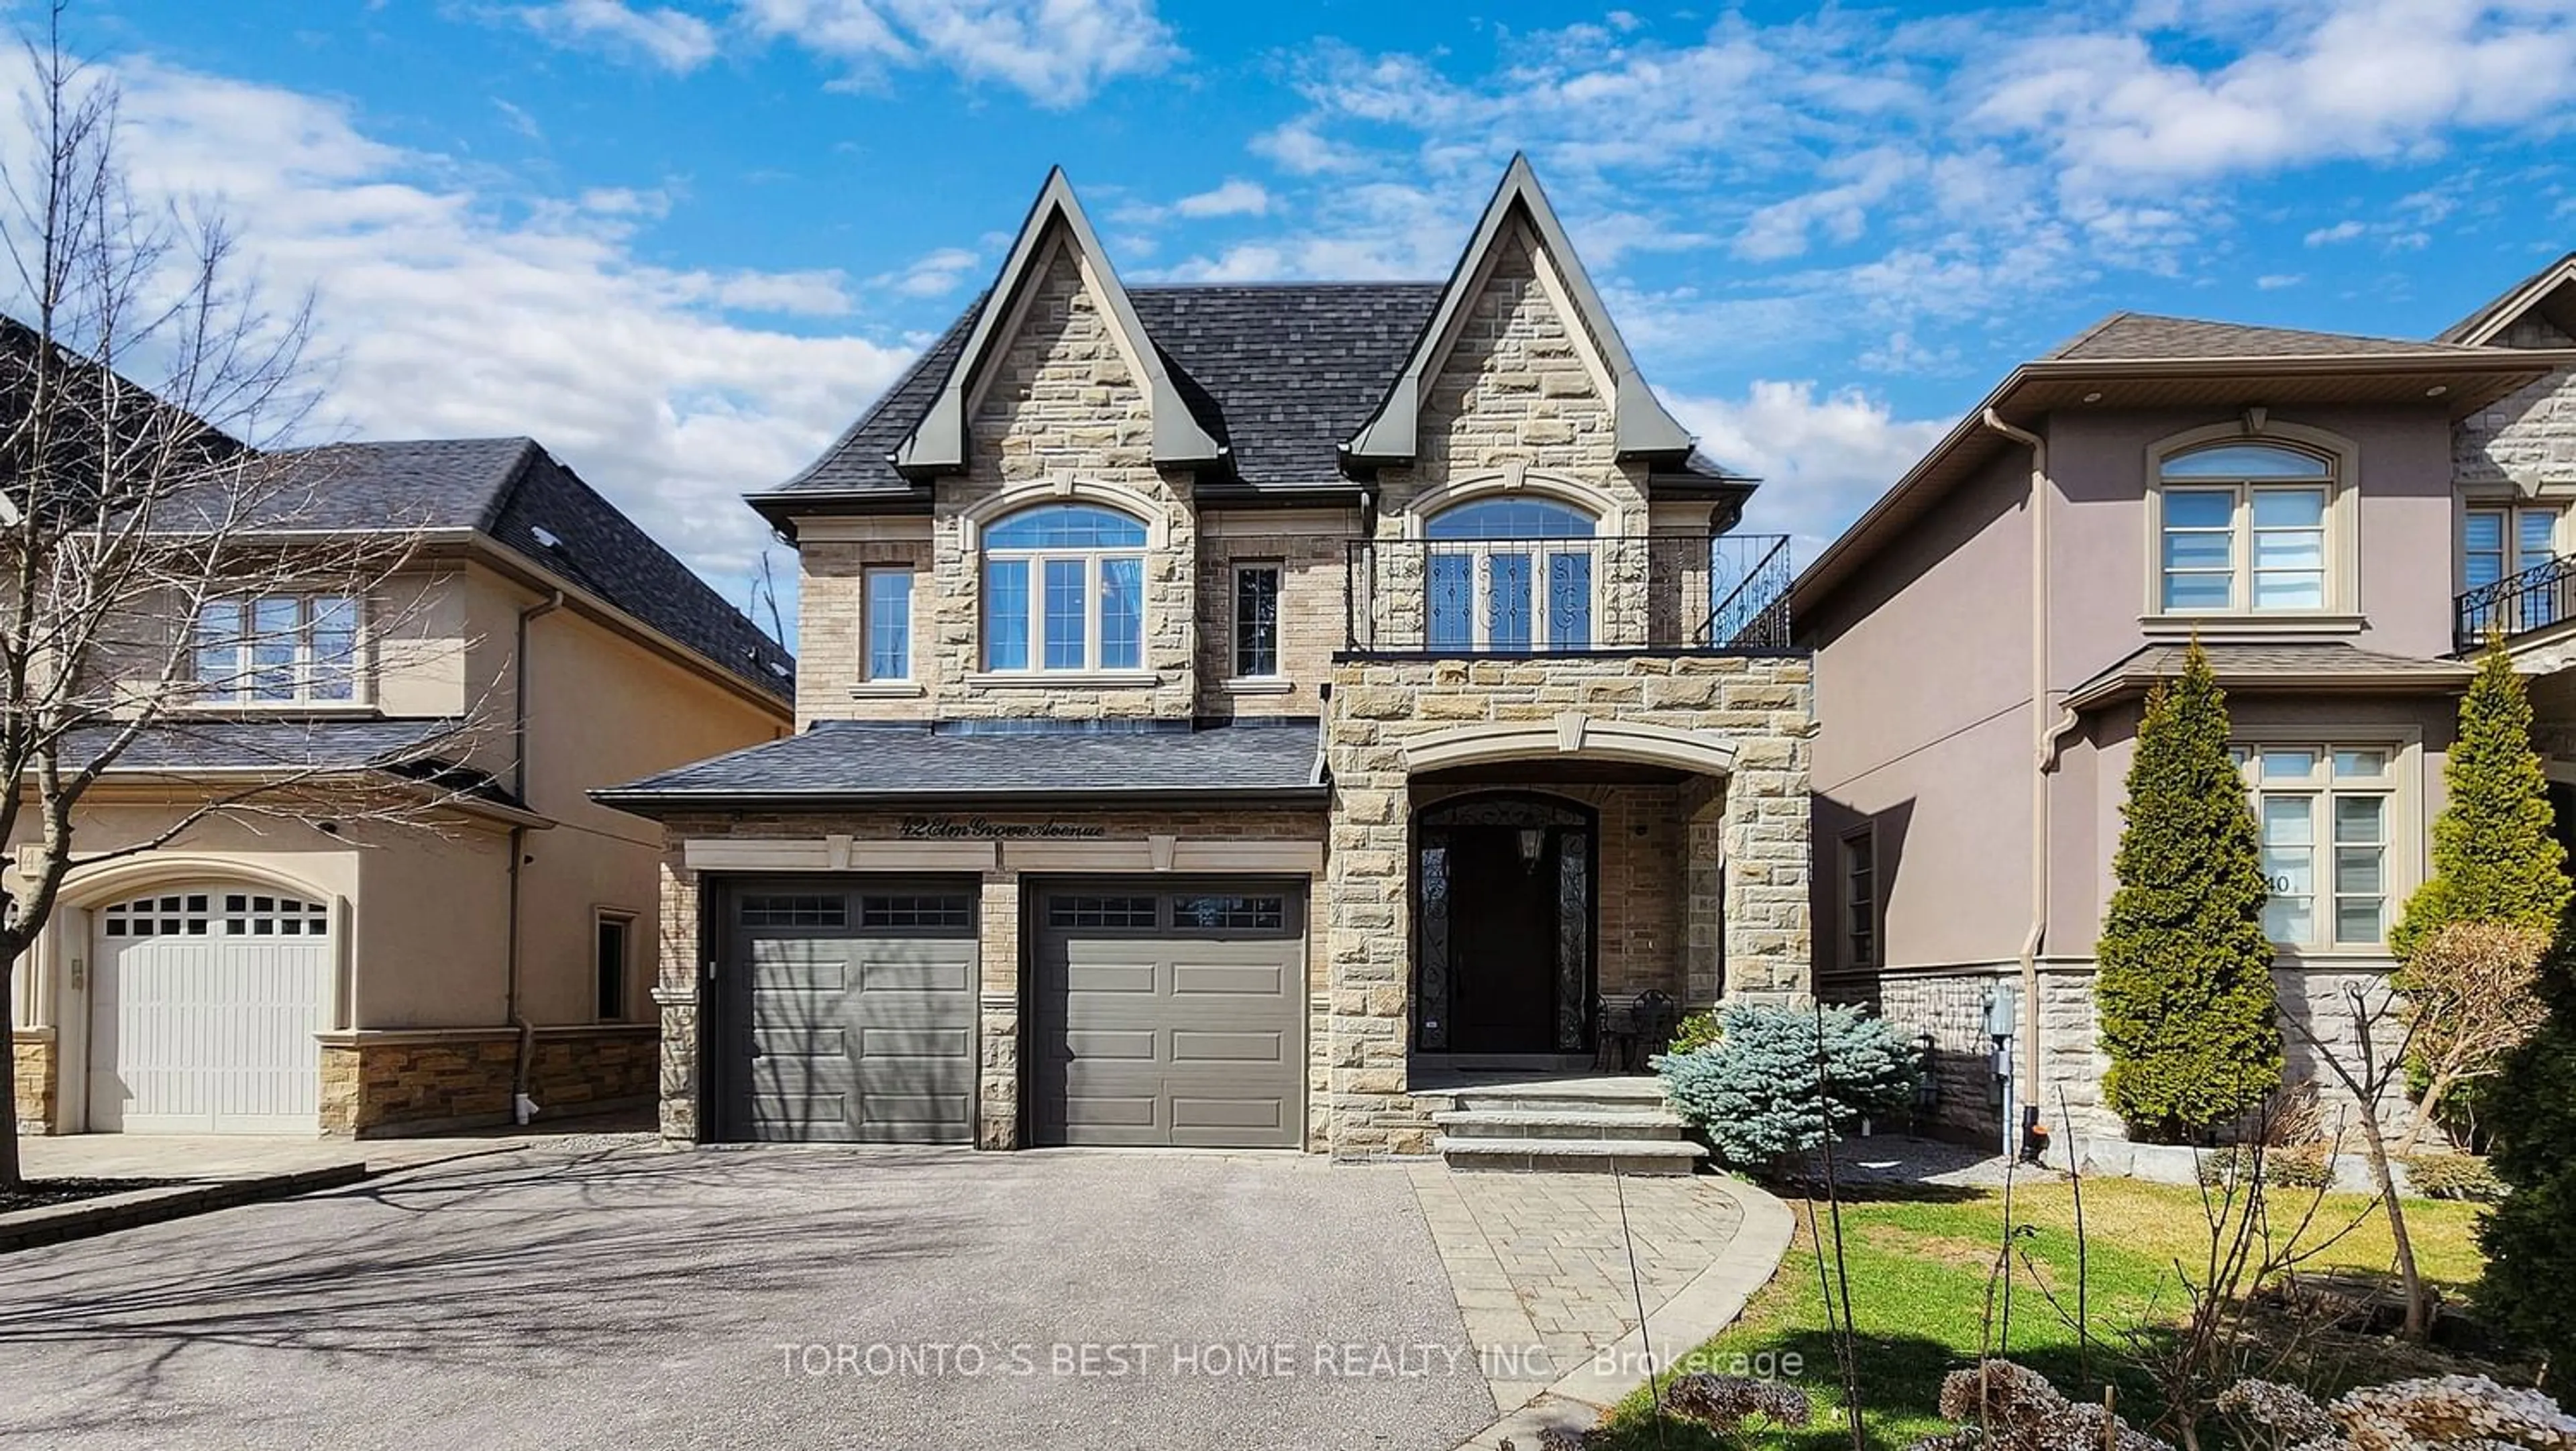 Home with brick exterior material for 42 Elm Grove Ave, Richmond Hill Ontario L4E 2V3